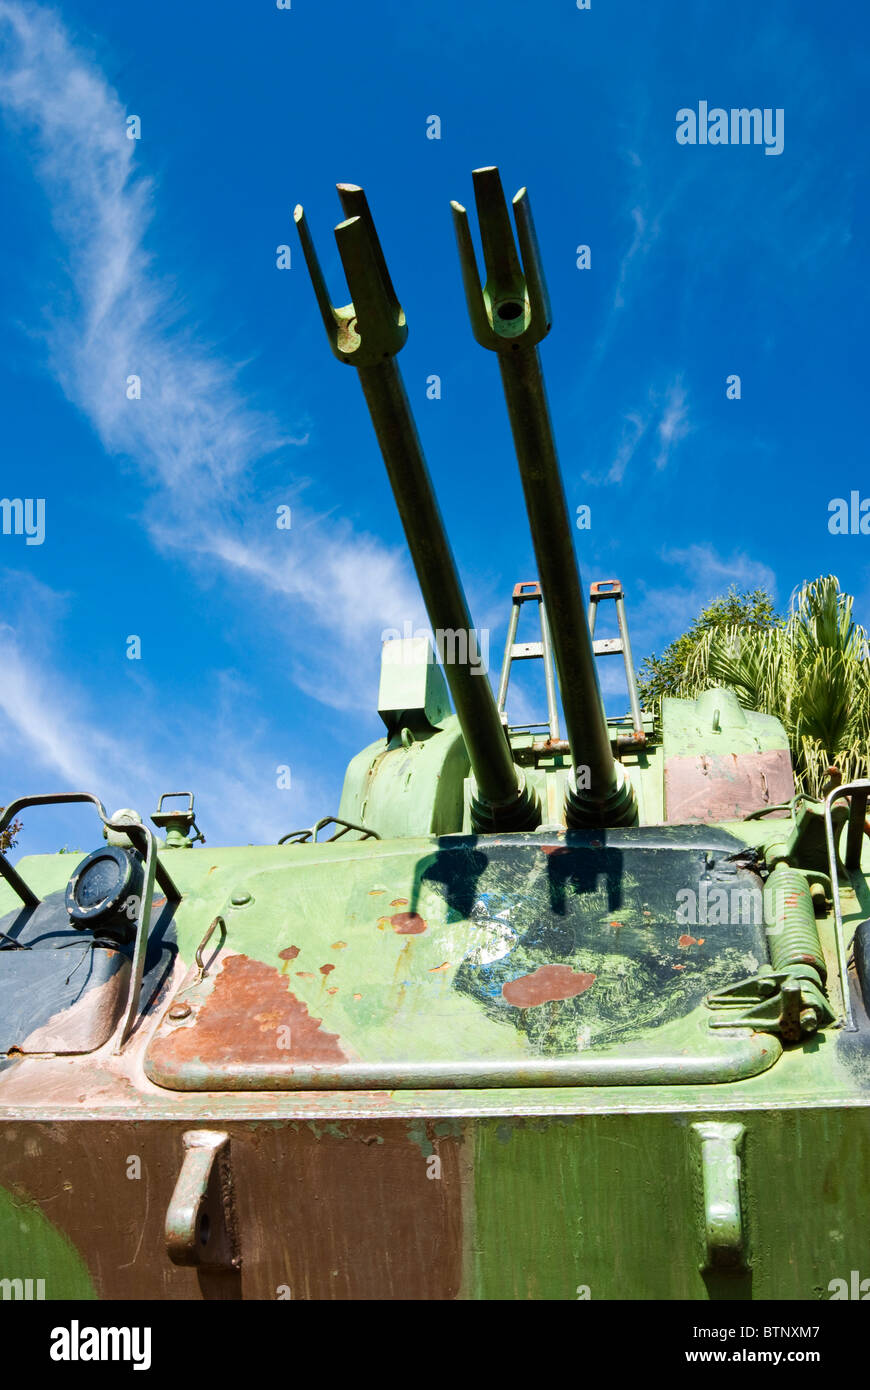 Zwei Pistole Maulkörbe auf dem Tank bis zum Himmel. Stockfoto